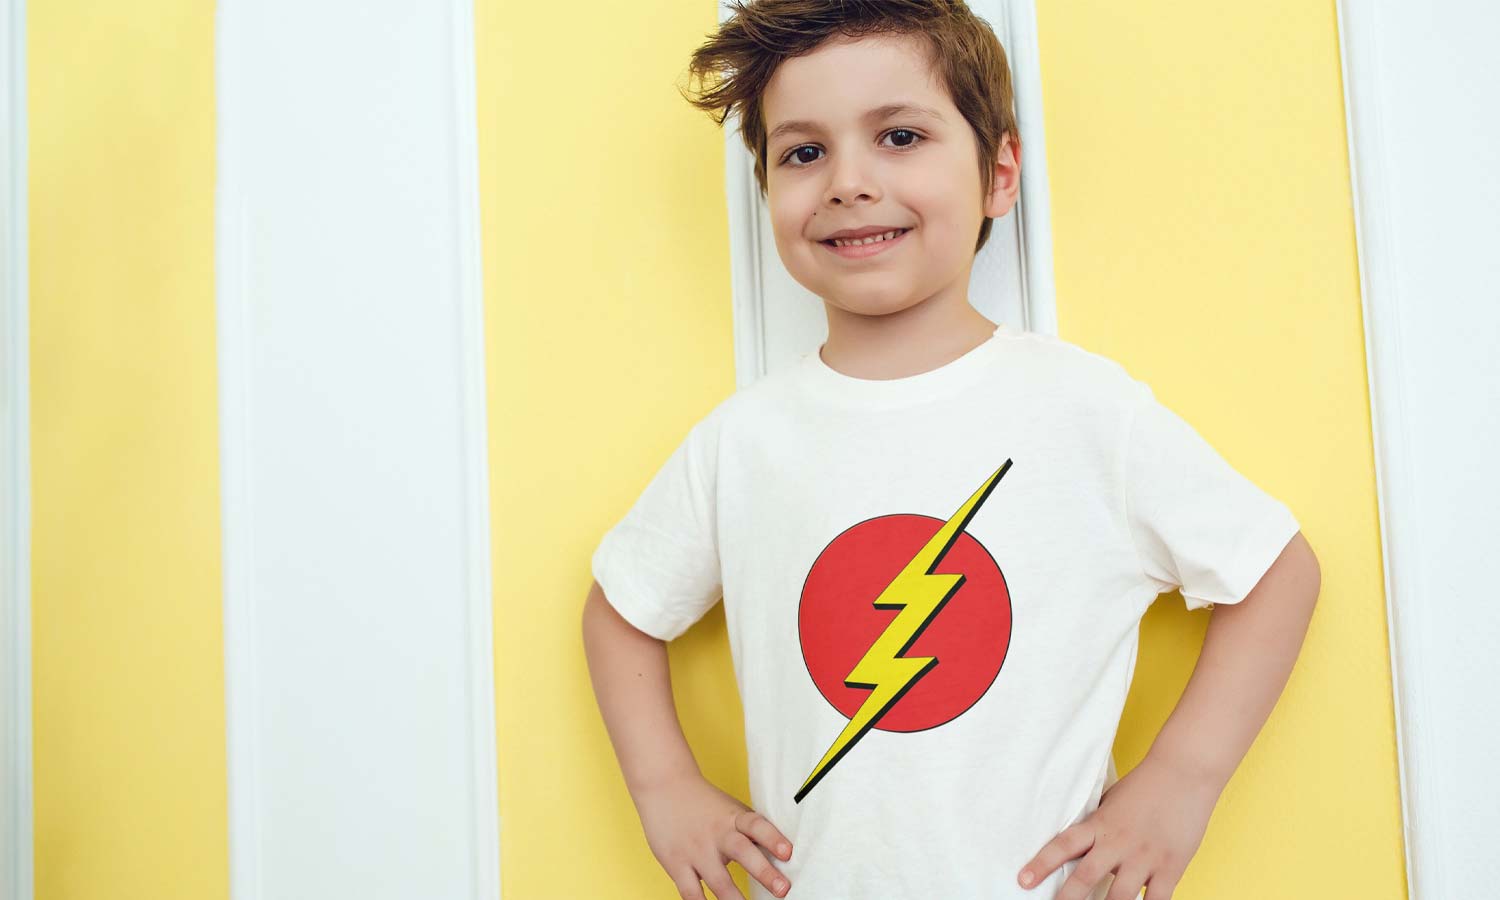 Majica Flash, Dječji model, Crvena i bijela boja - TS455